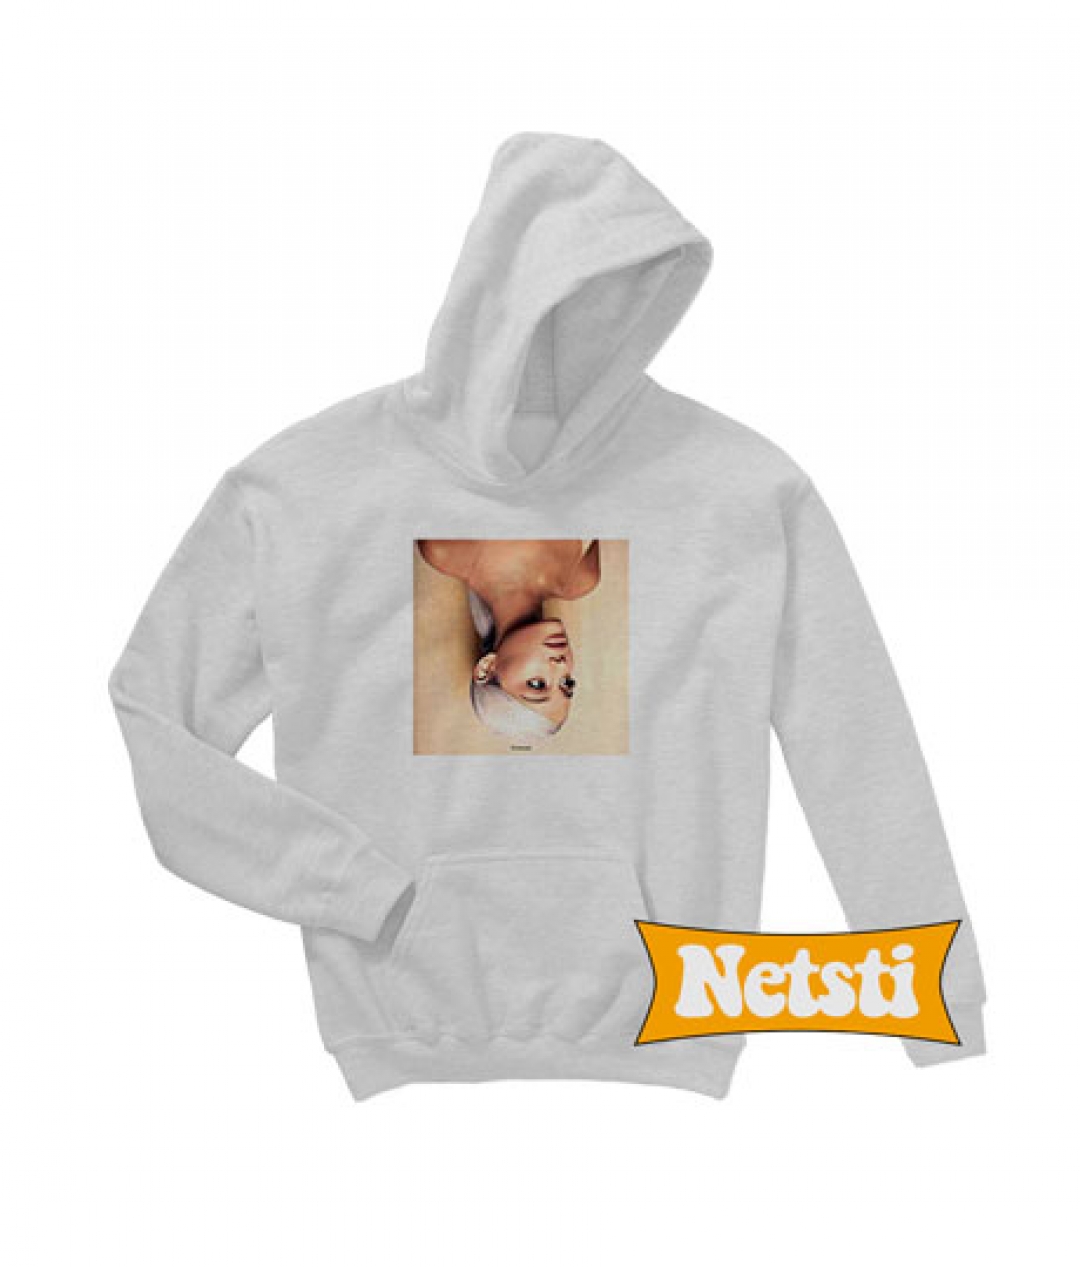 Ariana Grande Chic Fashion Hooded Sweatshirt Unisex – Netsti Chic ...